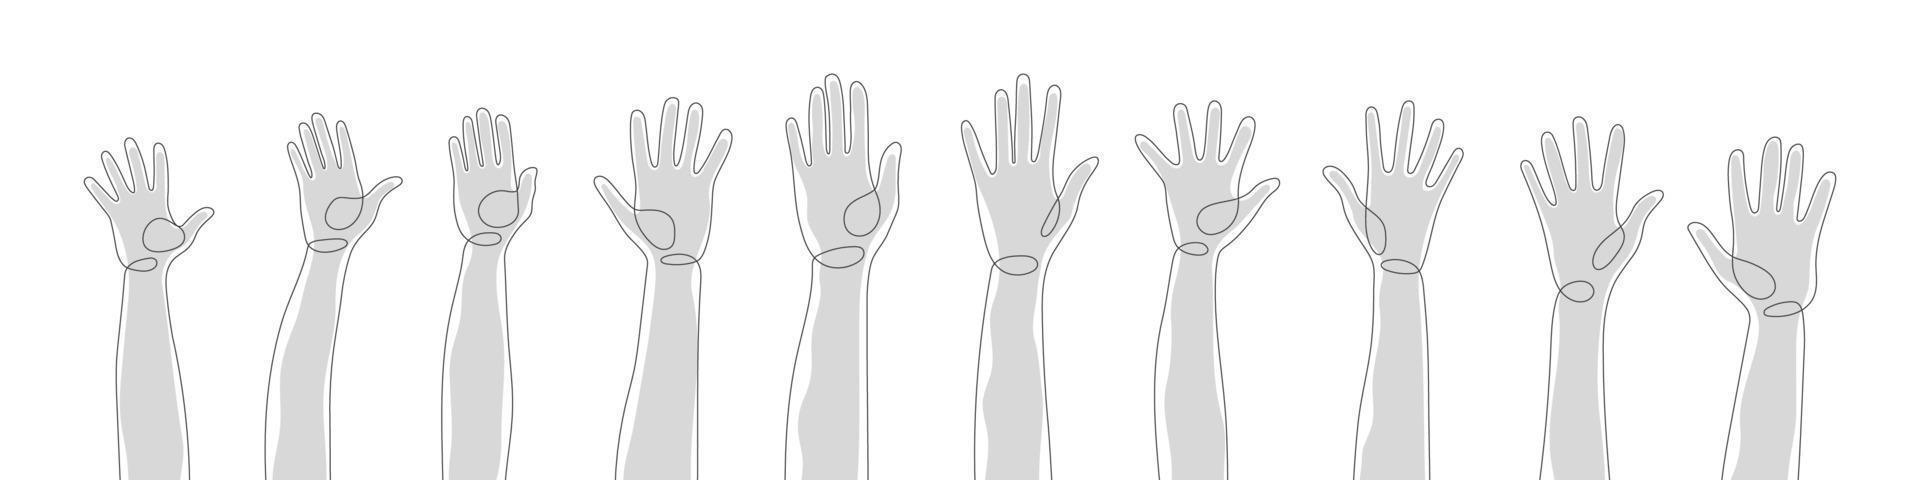 verschiedene Silhouetten Hände. eine linie menschliche hände. Arme und Hände erhoben. Vektor-Illustration vektor